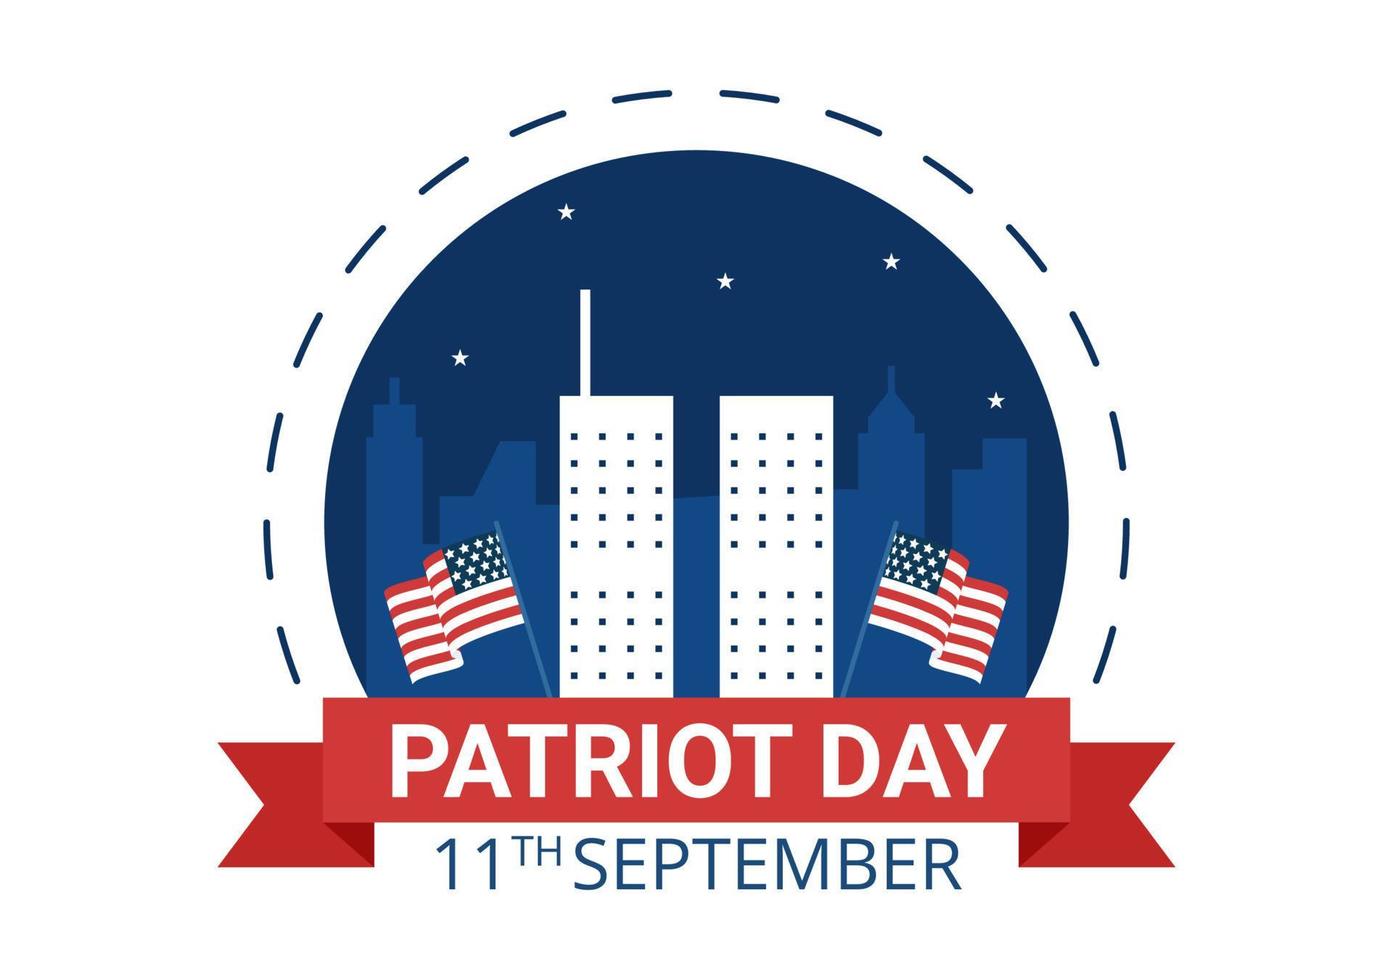 patriot day usa célébration illustration plate de dessin animé dessiné à la main avec drapeau américain et national se souvient sur la conception de fond de vecteur